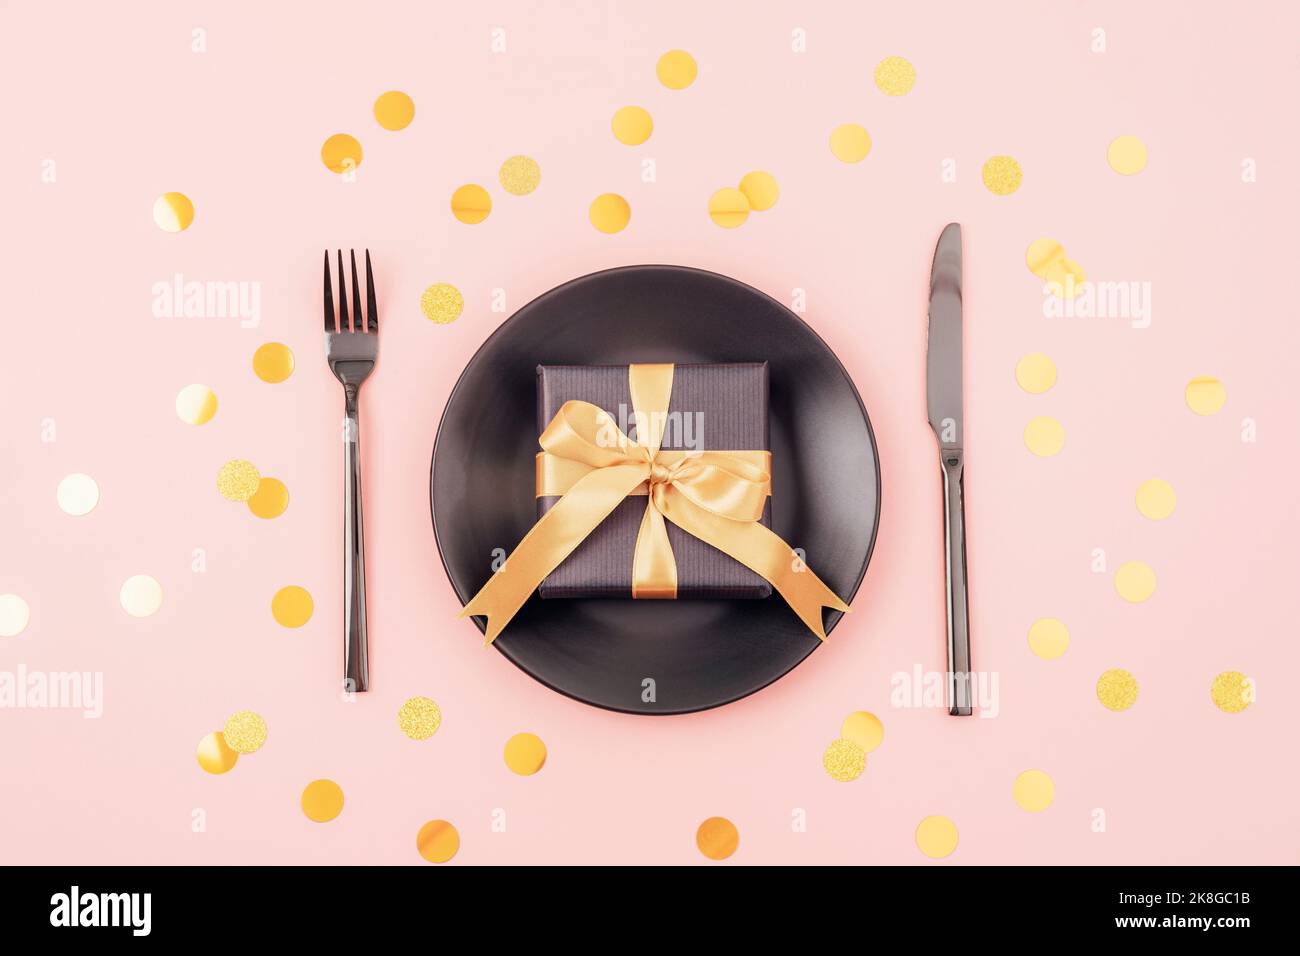 Table élégante, boîte cadeau, assiette noire, couverts sur fond rose avec confettis dorés. Concept de Noël. Vue de dessus, plan d'appartement Banque D'Images